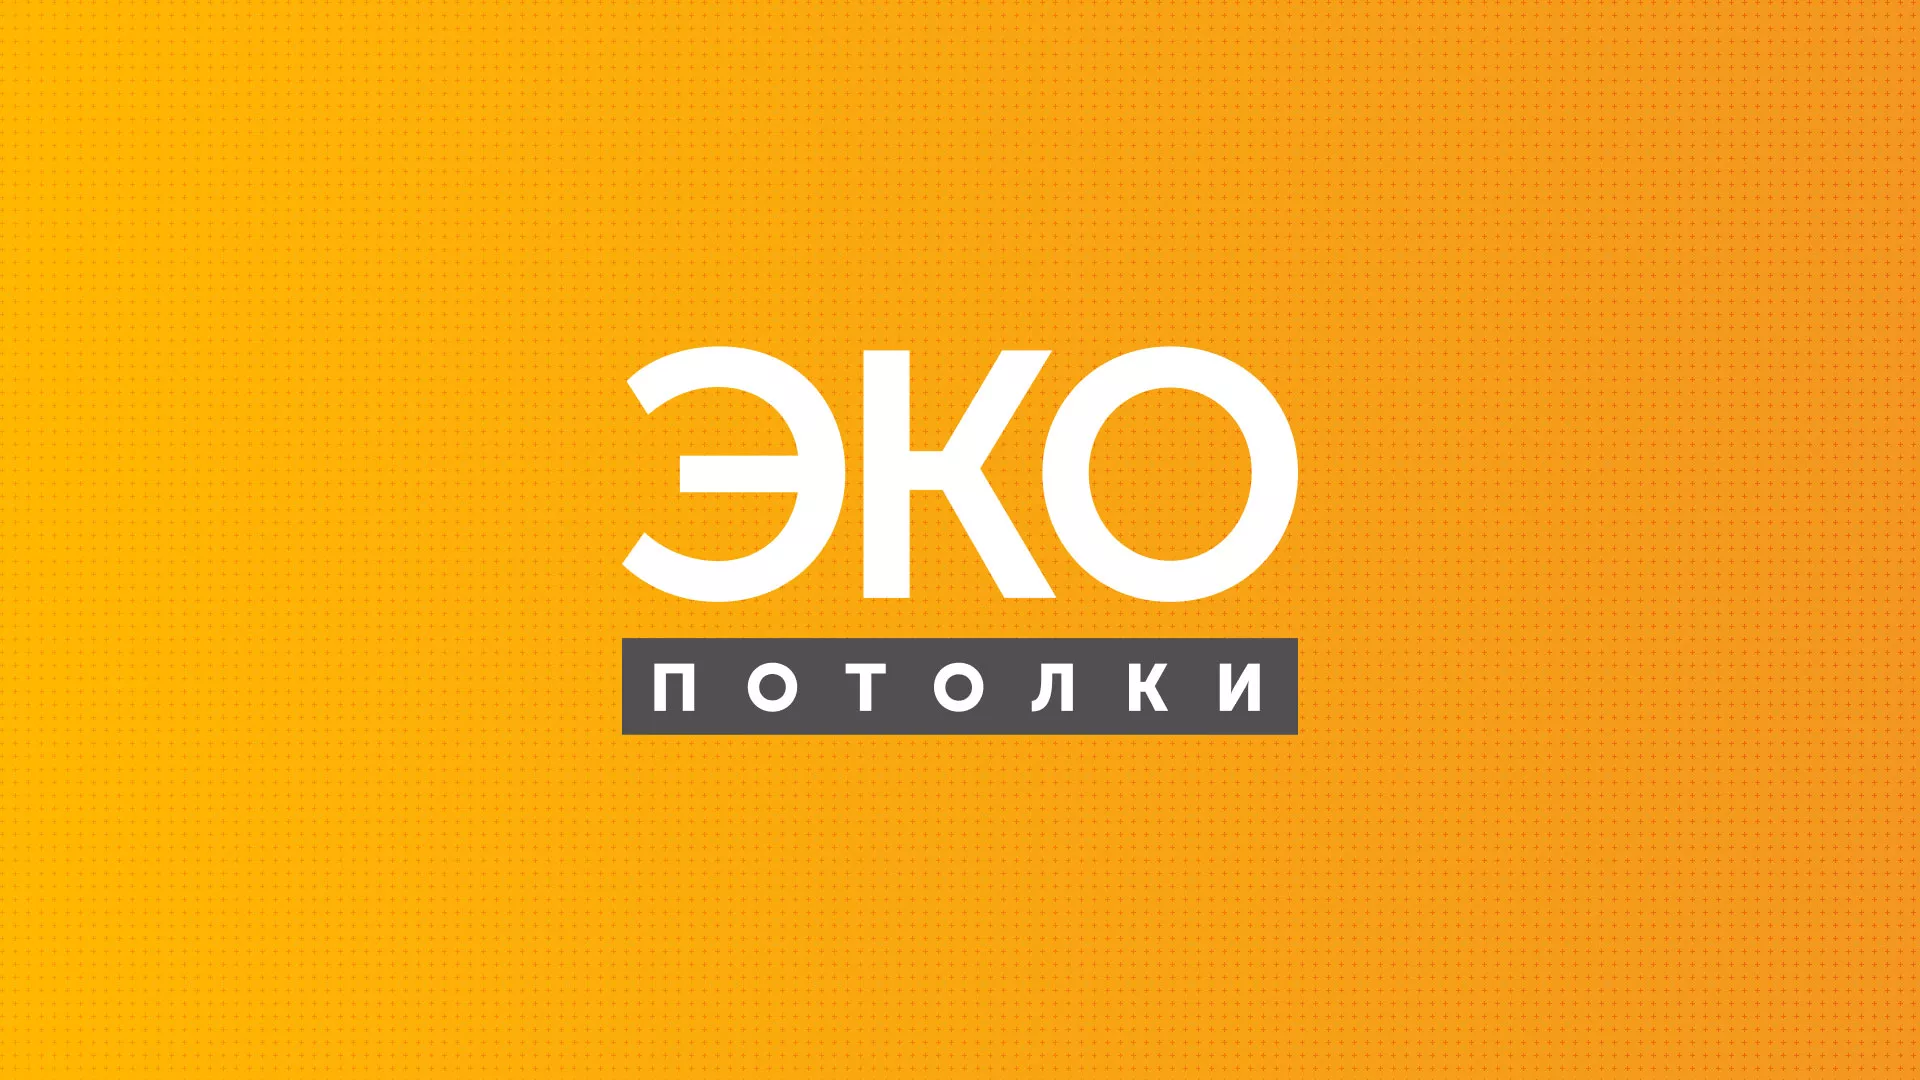 Разработка сайта по натяжным потолкам «Эко Потолки» в Весьегонске